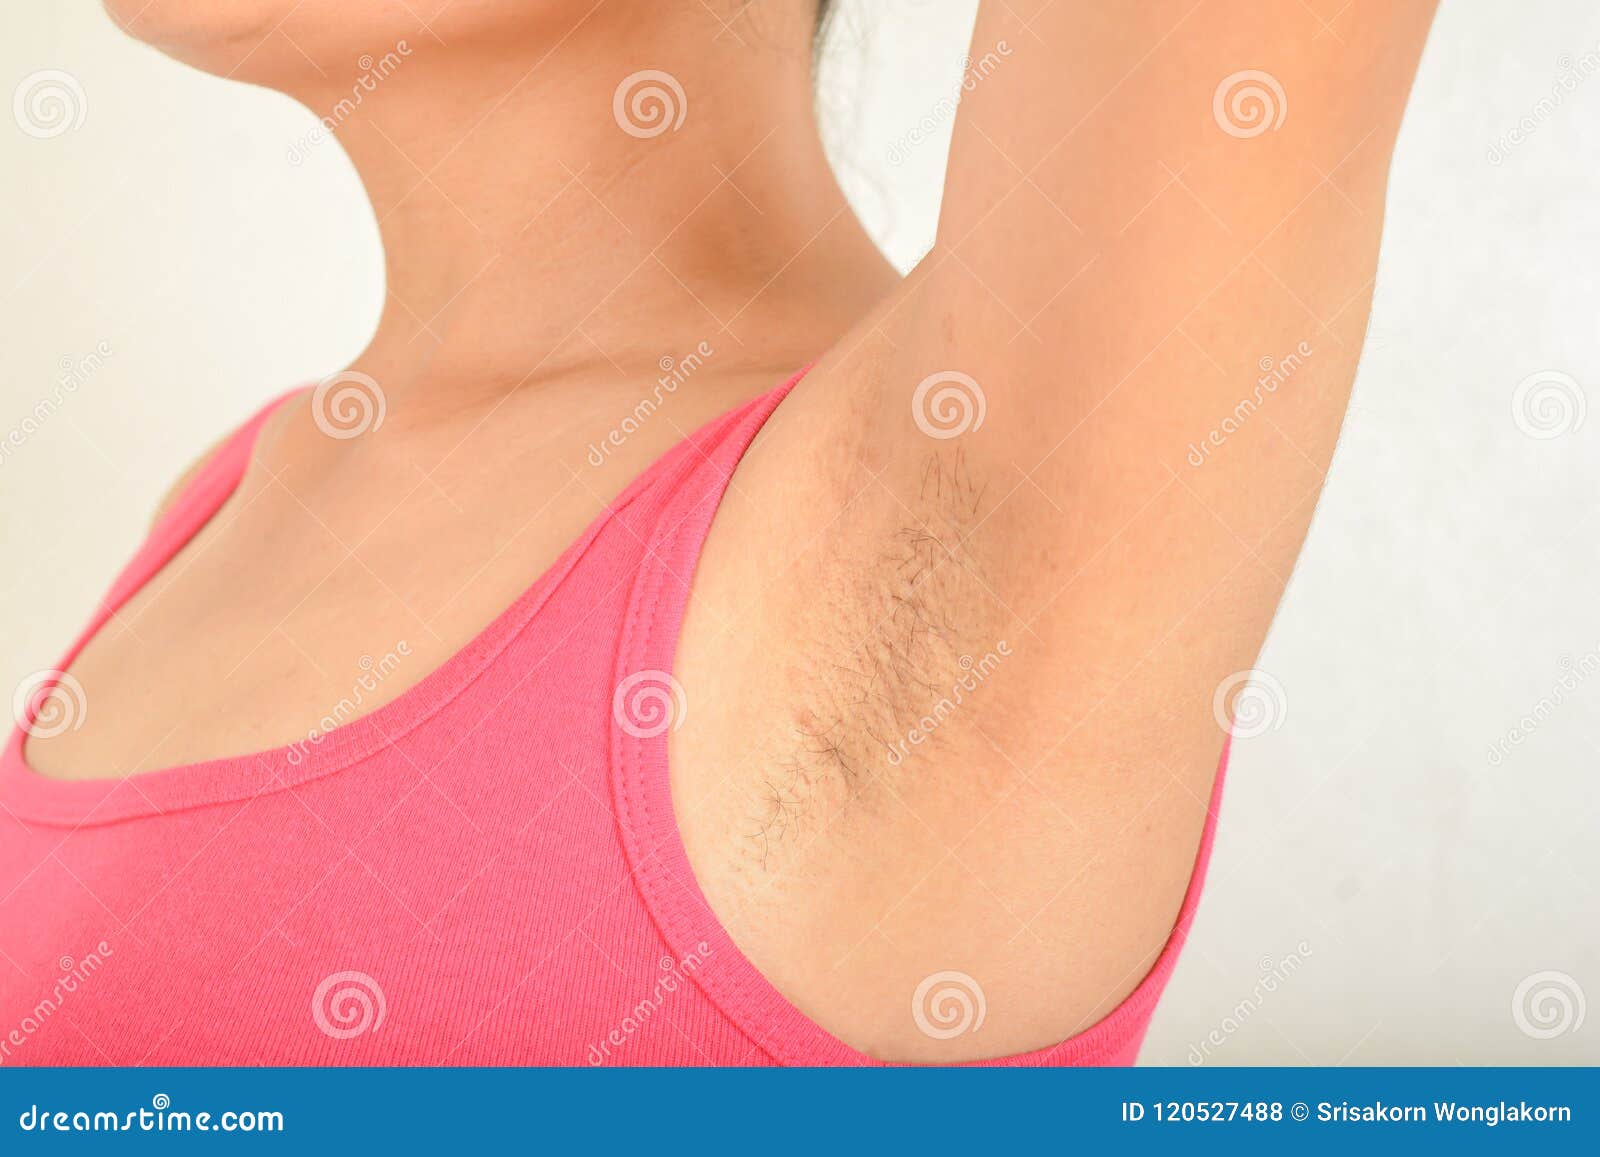 hairy armpits and black spots